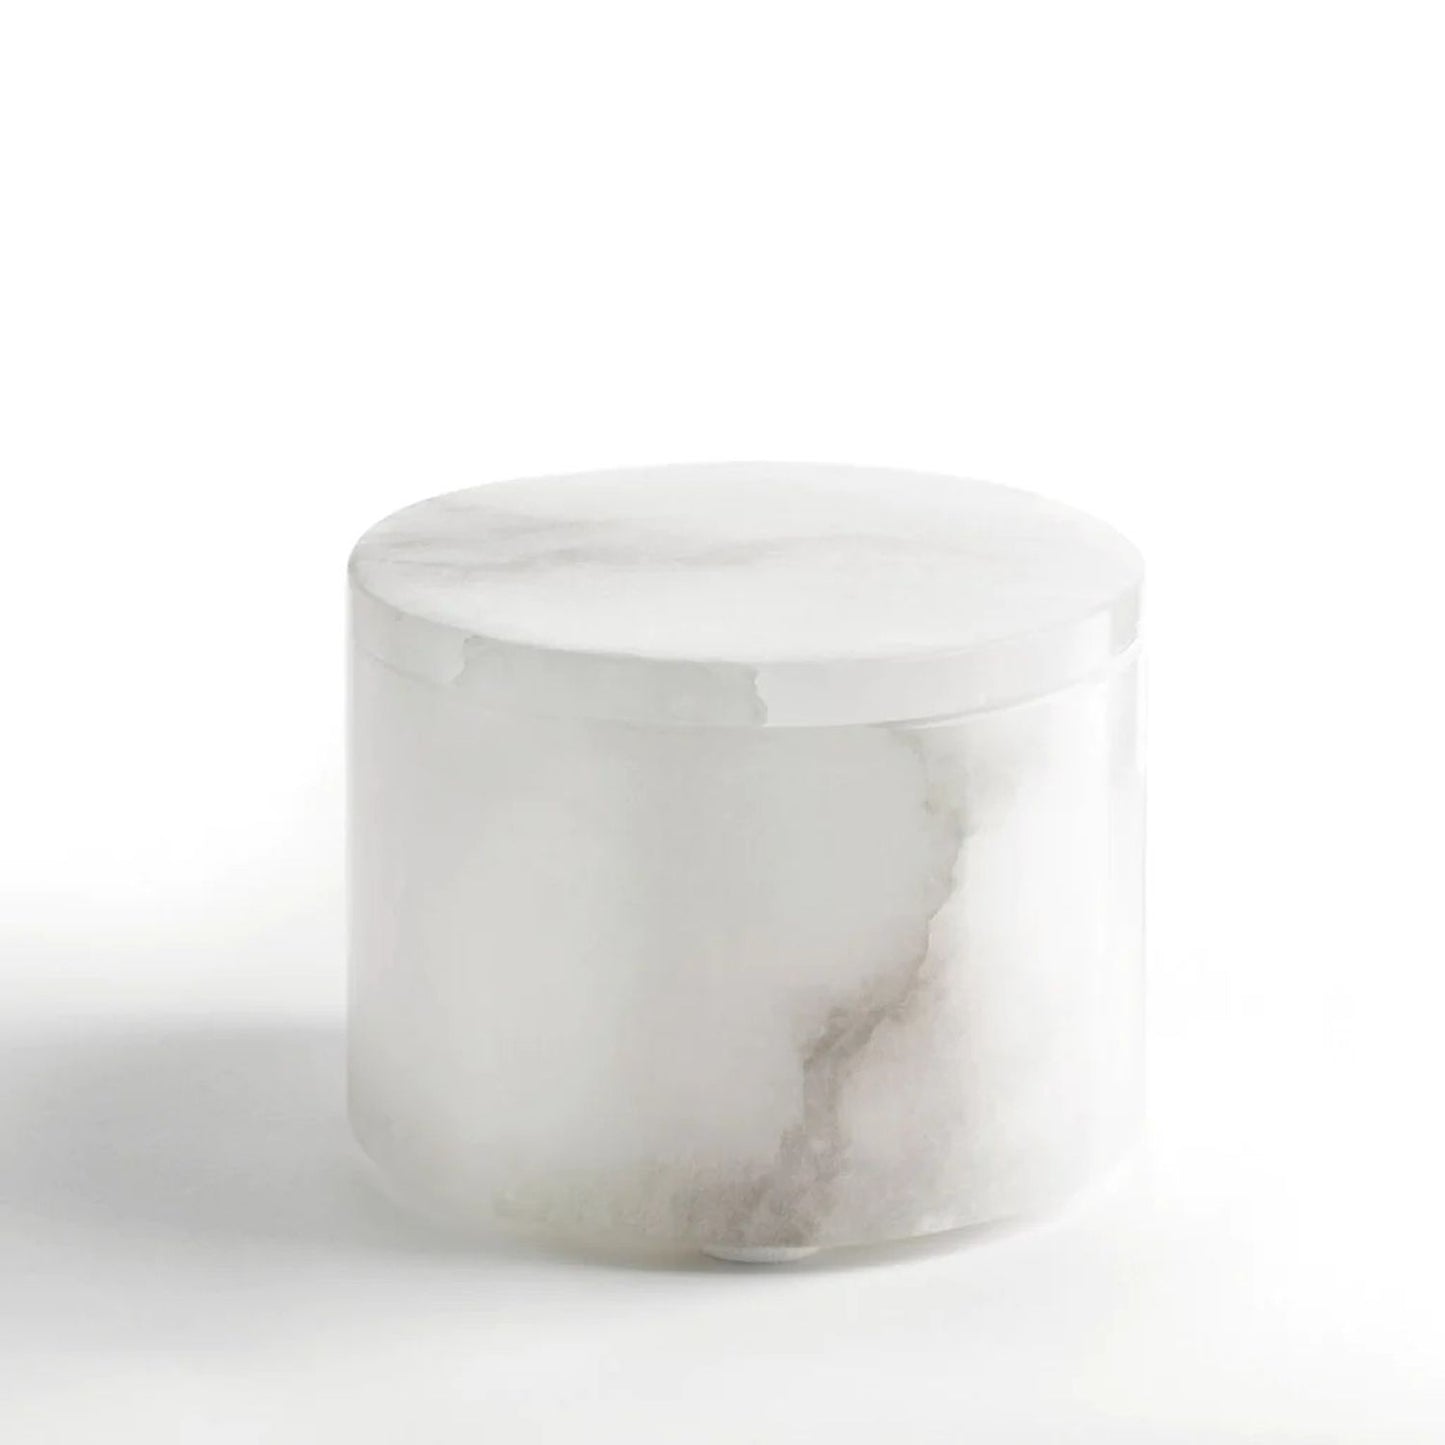 Kassatex Alabaster Bath Accessories Cotton Jar